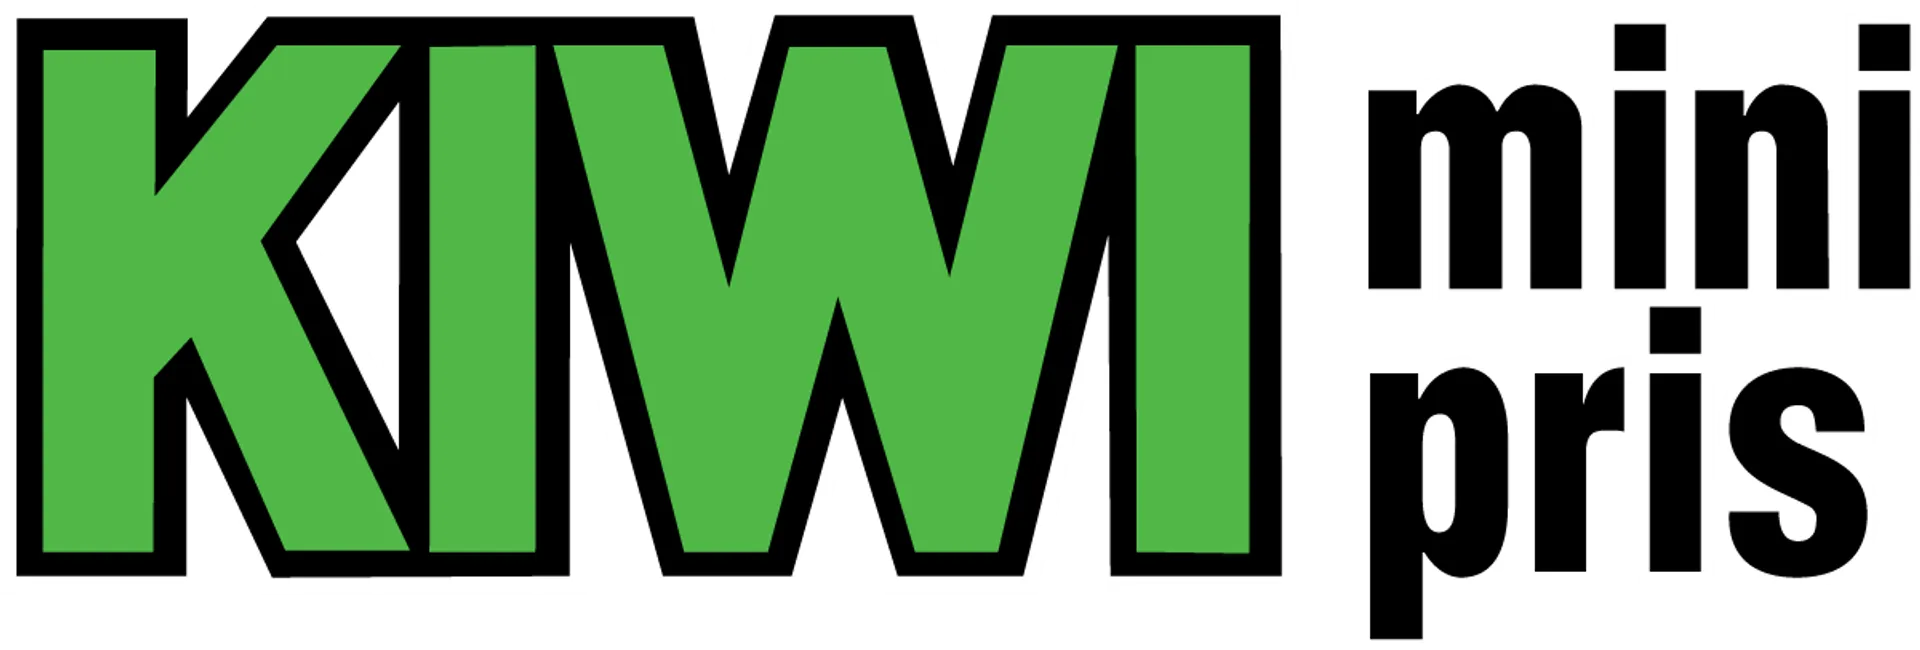 KIWI logo